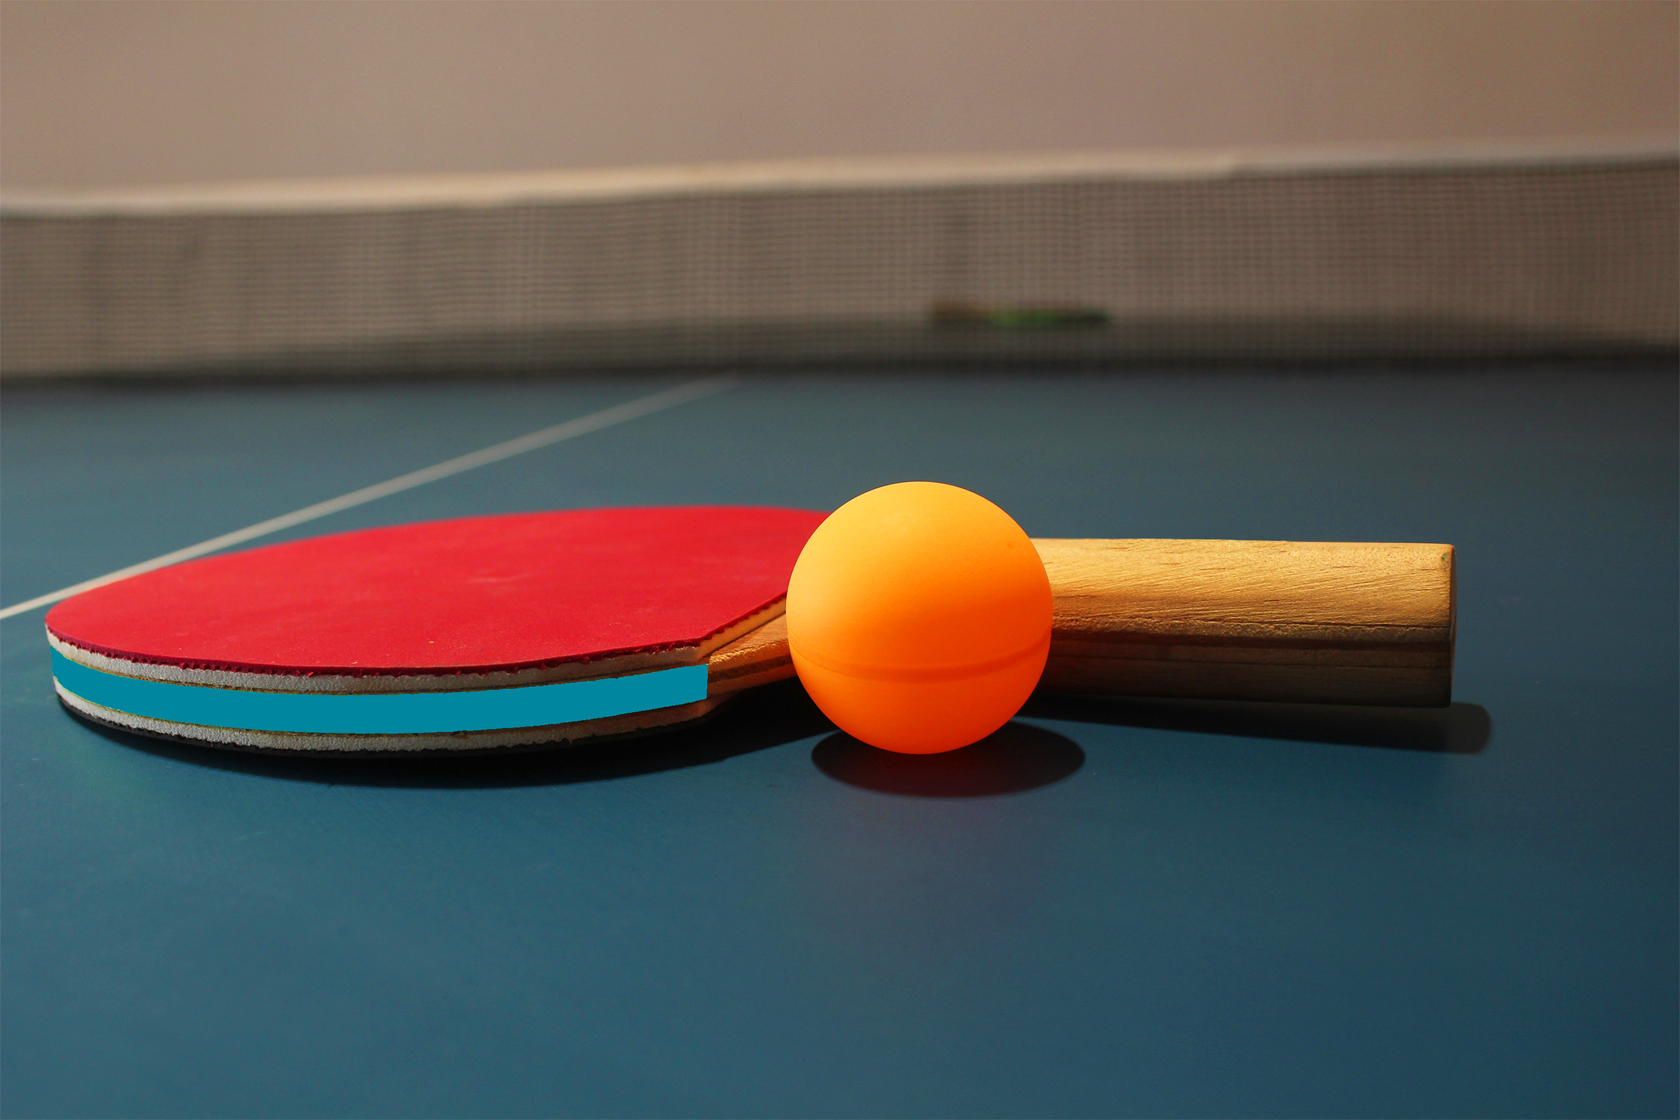 papier peint de tennis de table,ping pong,sport de raquette,raquette de tennis de table,des sports,racketlon